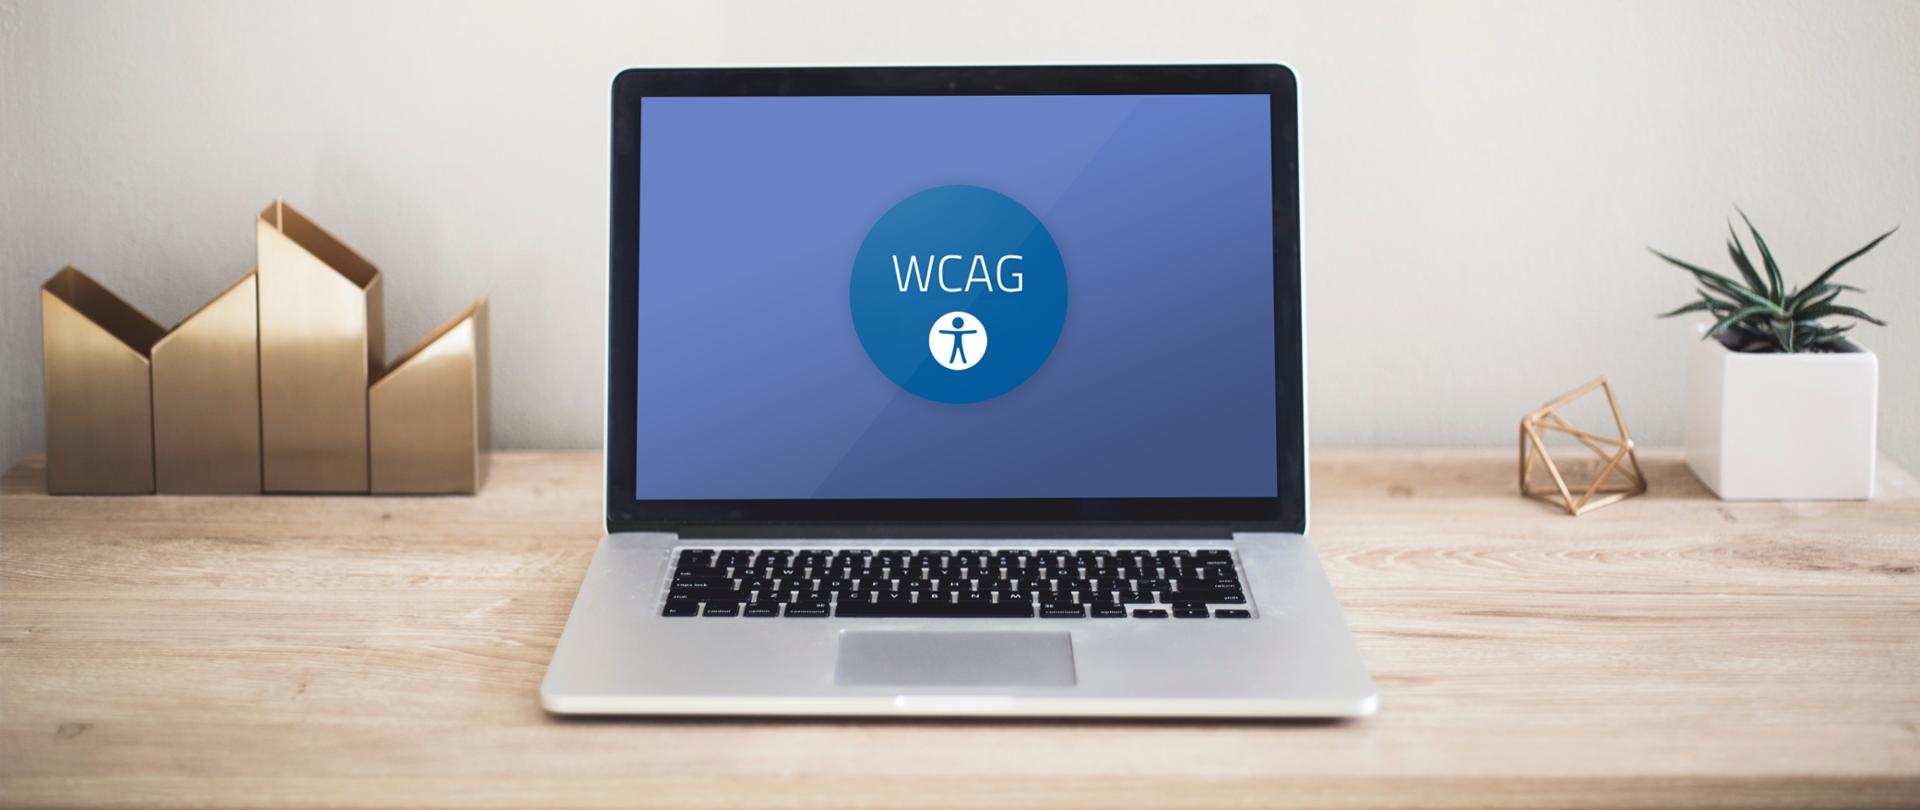 Na pierwszym planie stojący laptop na ekranie którego widoczne są litery WCAG.